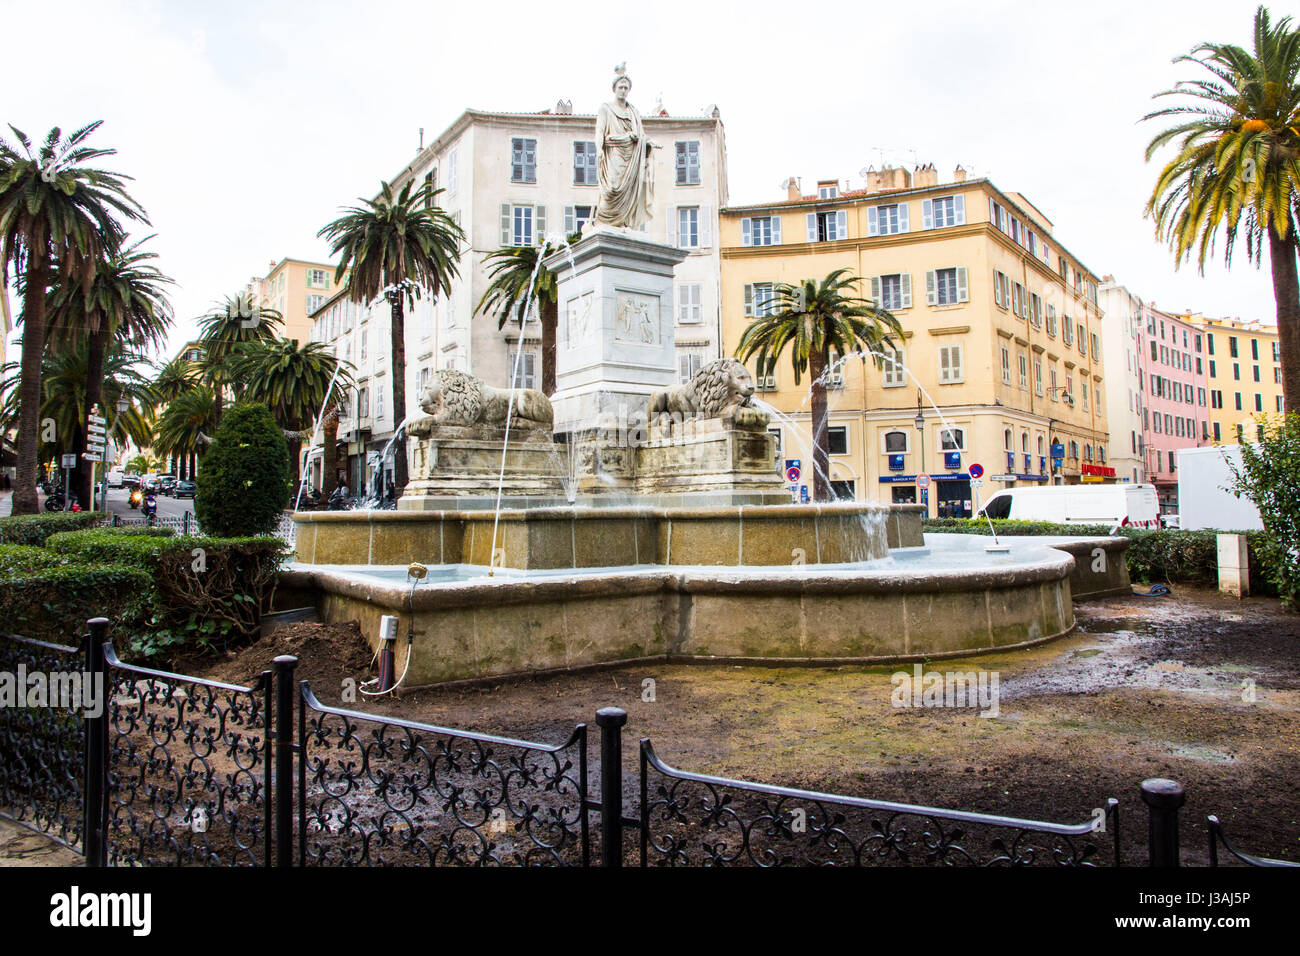 Posizionare Foch, noto anche come Place des Palmiers, dispone di una fontana con la statua di Napoleone Bonaparte drappeggiati in una toga romana, Ajaccio Corsica. Foto Stock